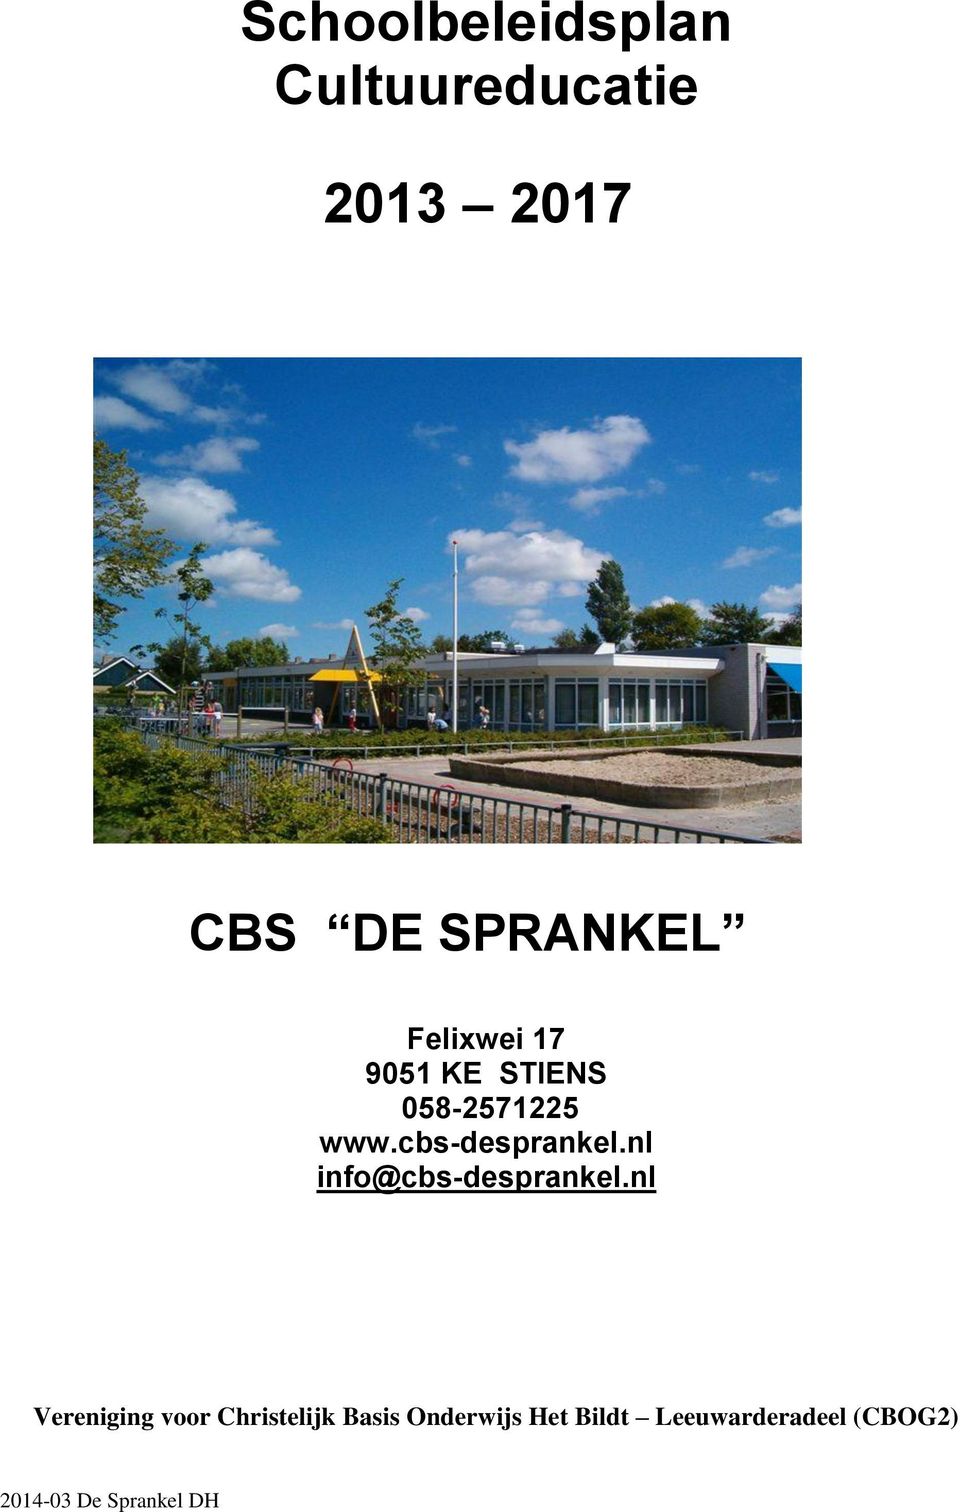 cbs-desprankel.nl info@cbs-desprankel.